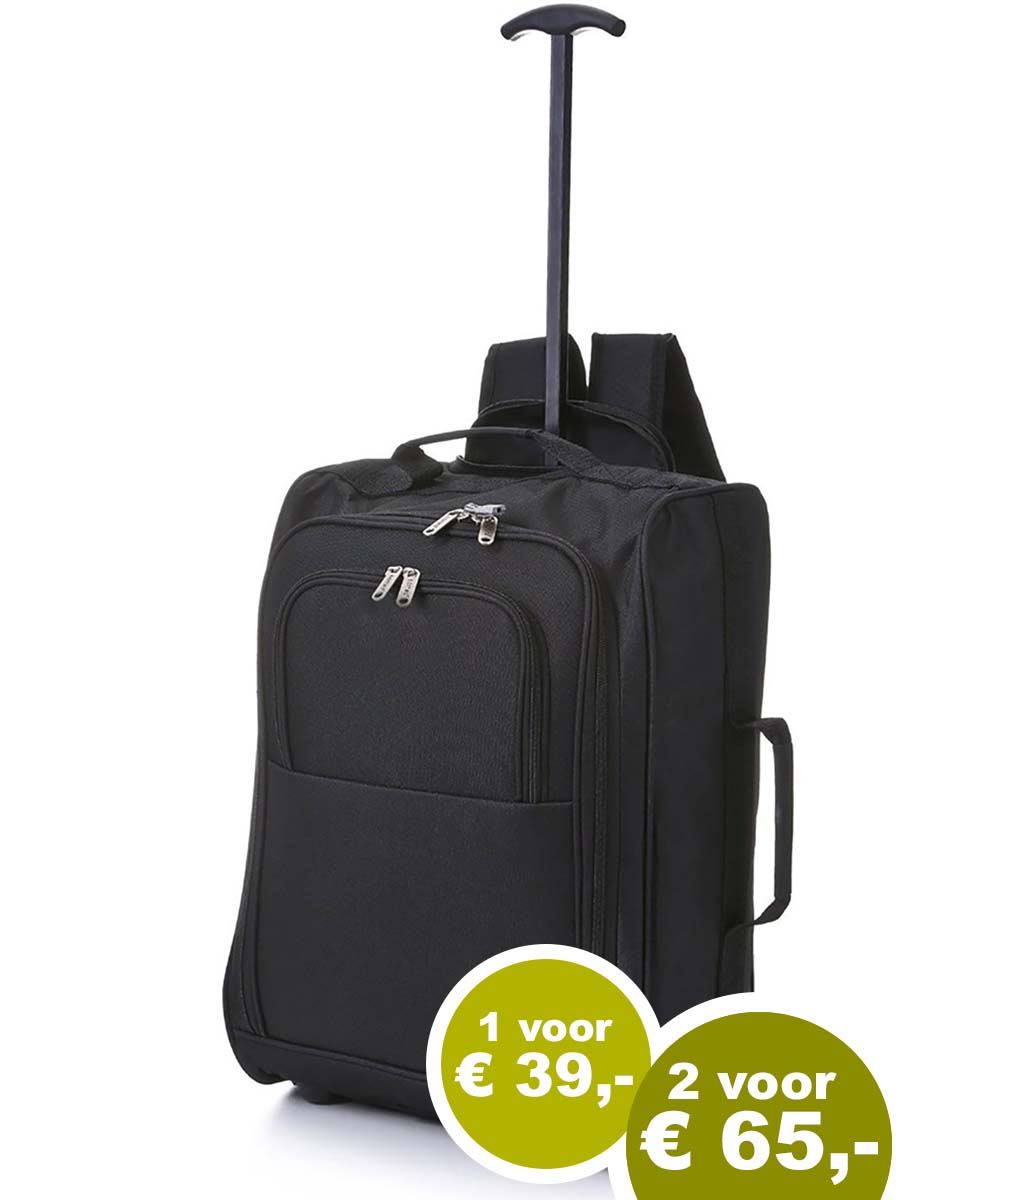 Toeschouwer Verplaatsbaar vervolgens Trolley bag én backpack 55x35x20 (het slimste formaat) - Smartkoffers